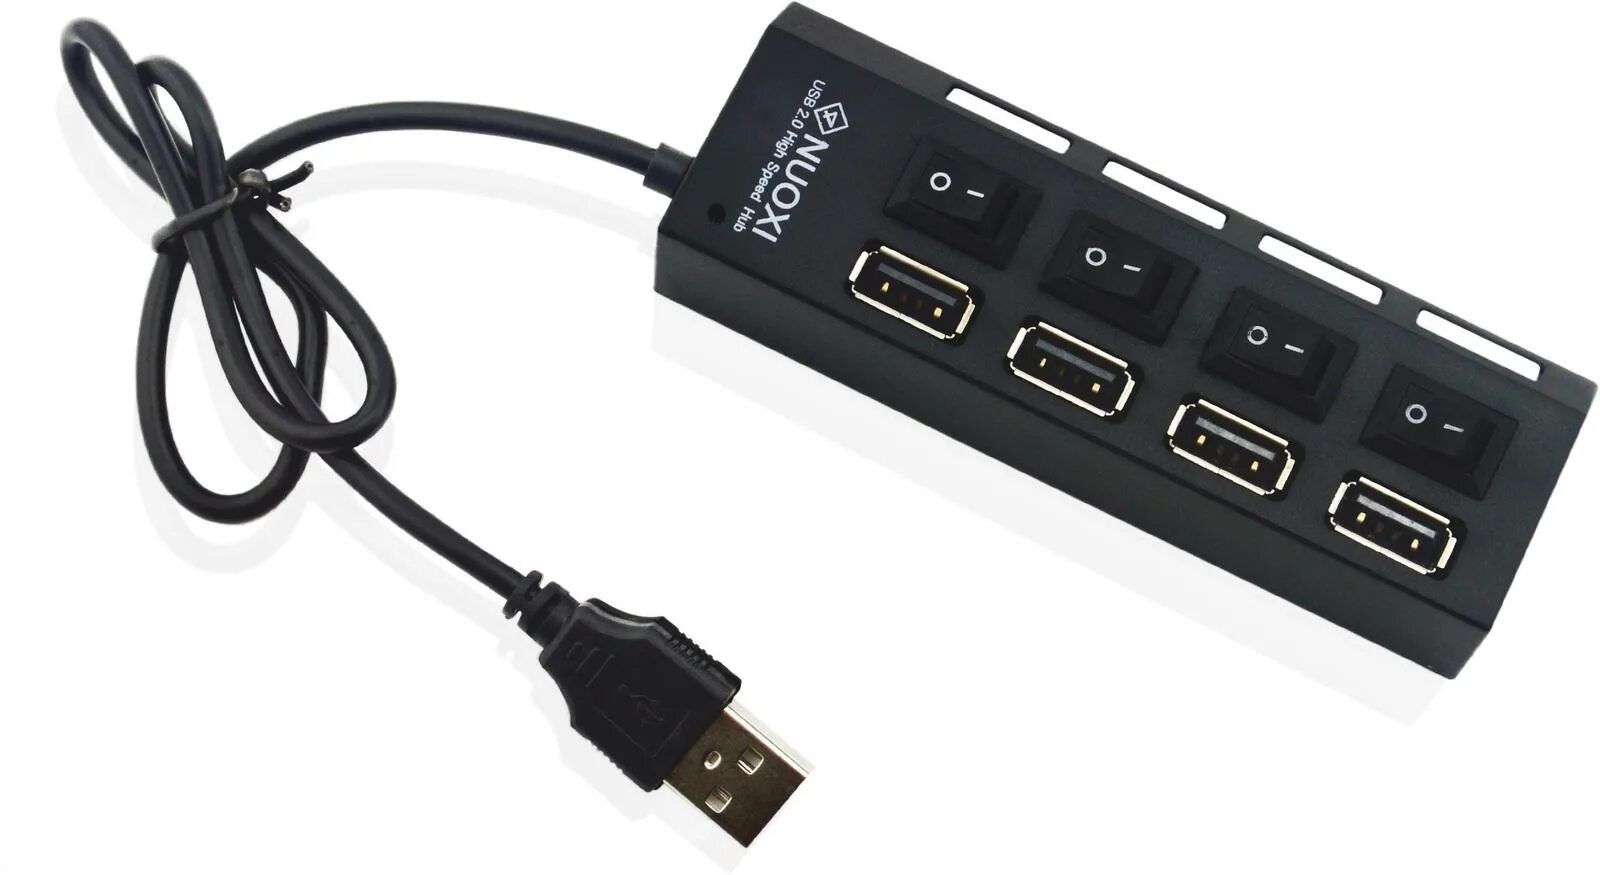 Разветвитель USB-Hub 2.0 (RTL-01a). 4 Ports USB 2.0 High Speed Hub. USB-разветвитель Esperanza USB 2.0 Hub 4-Port (ea127). USB-разветвитель (хаб) h401a. Usb 2.0 high speed